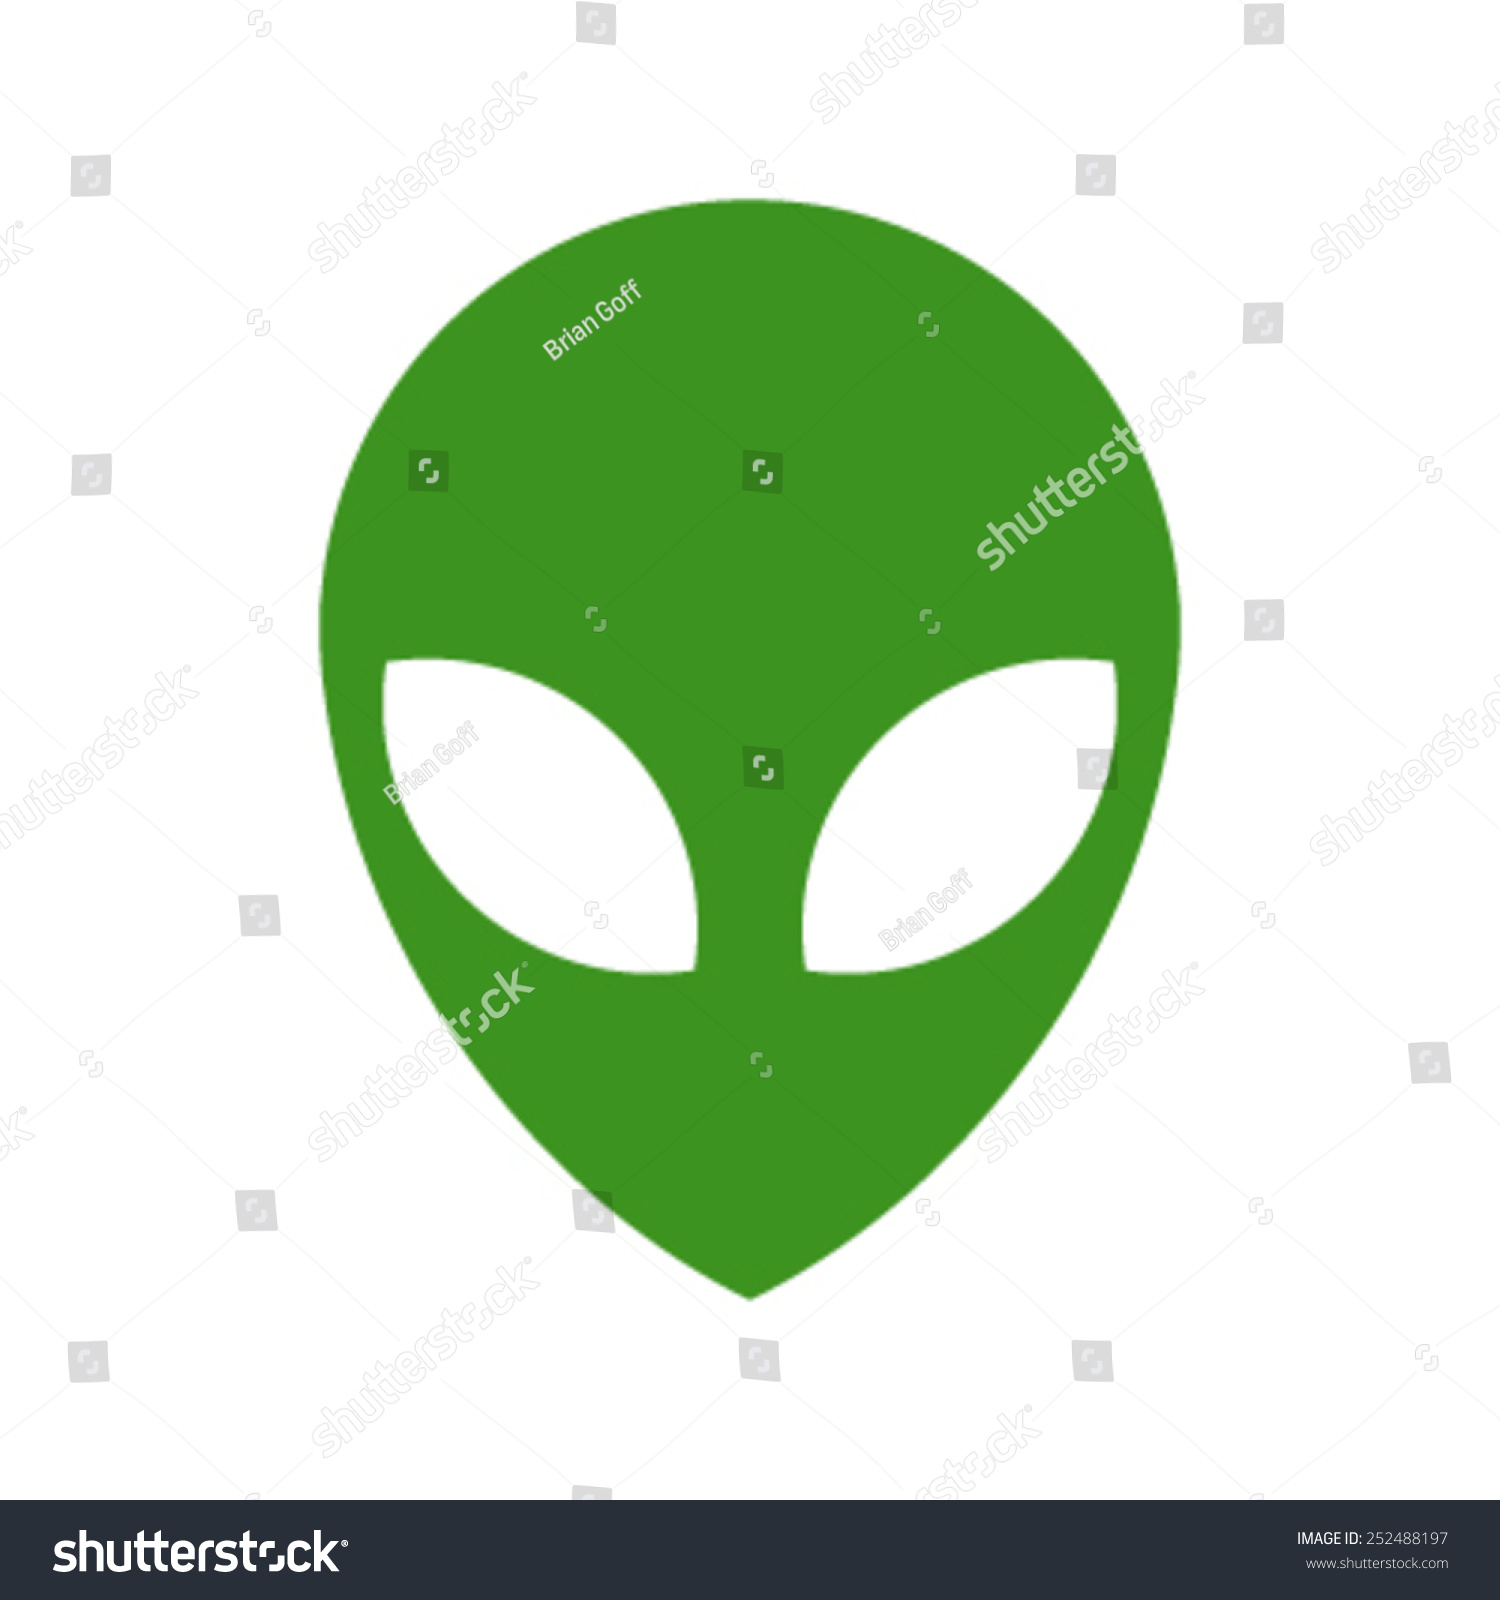 Alien Head Vector Icon Stock Vector 252488197 - Shutterstock